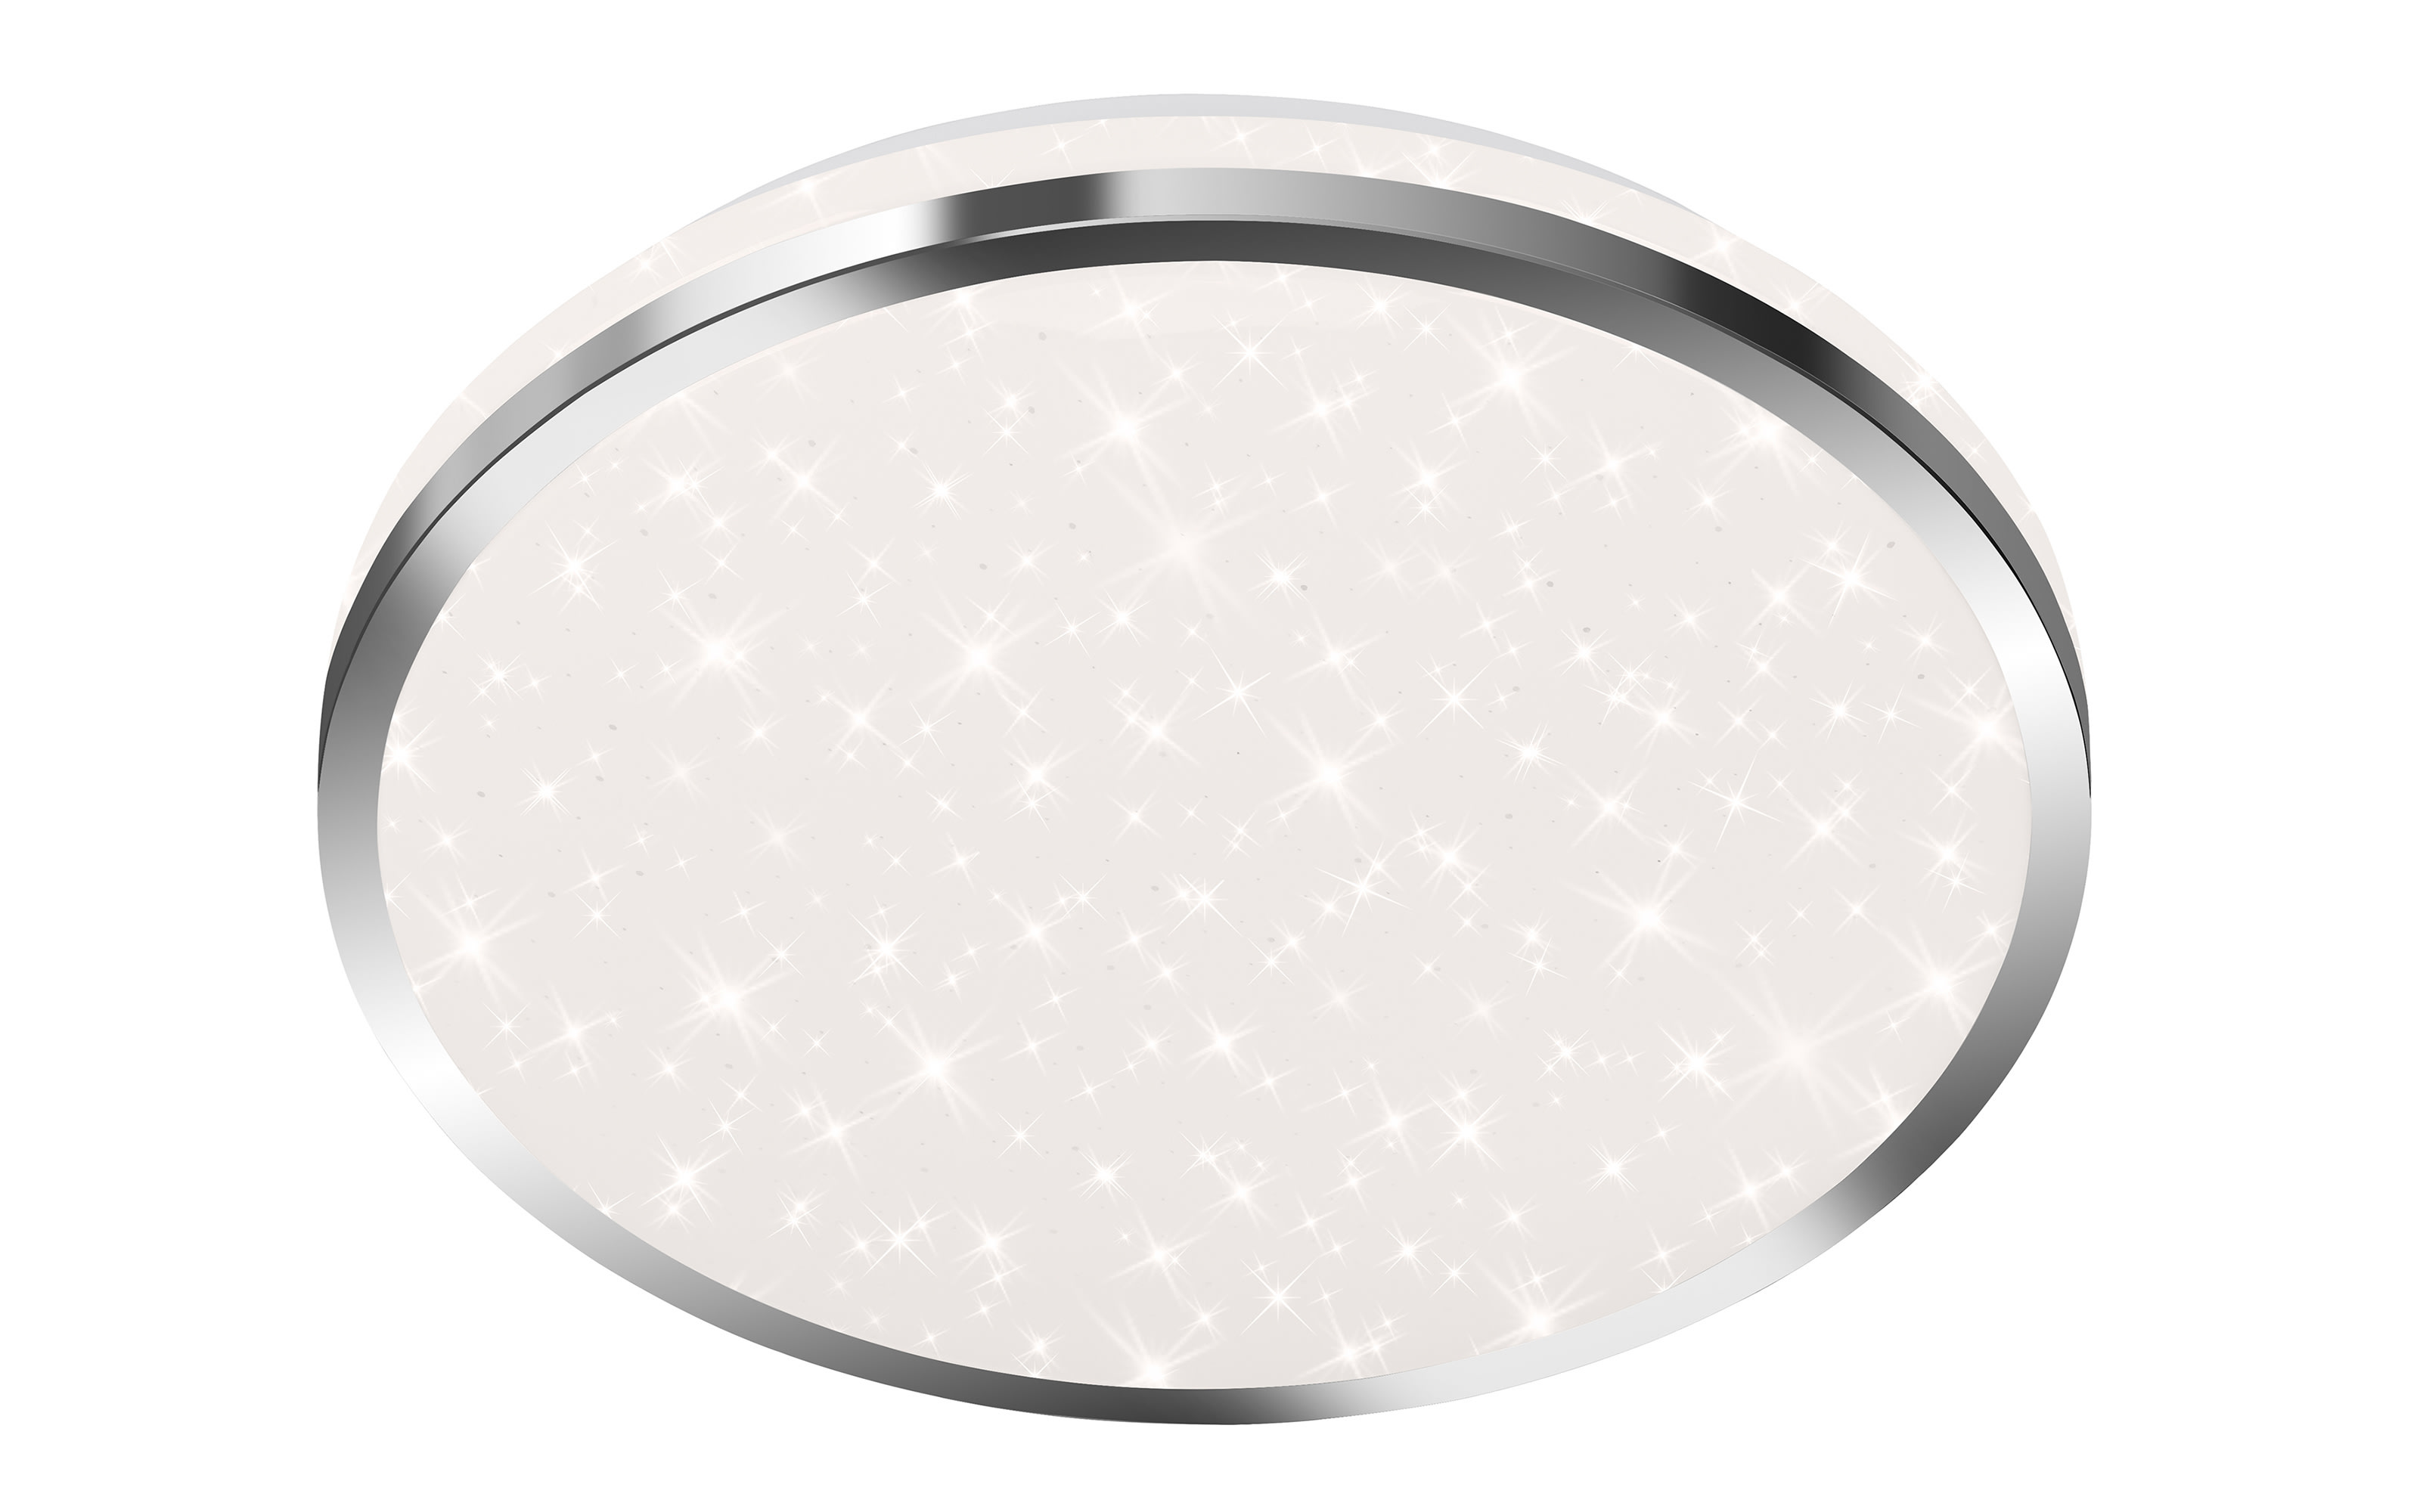 LED-Deckenleuchte Acorus, chrom/weiß, 28 cm